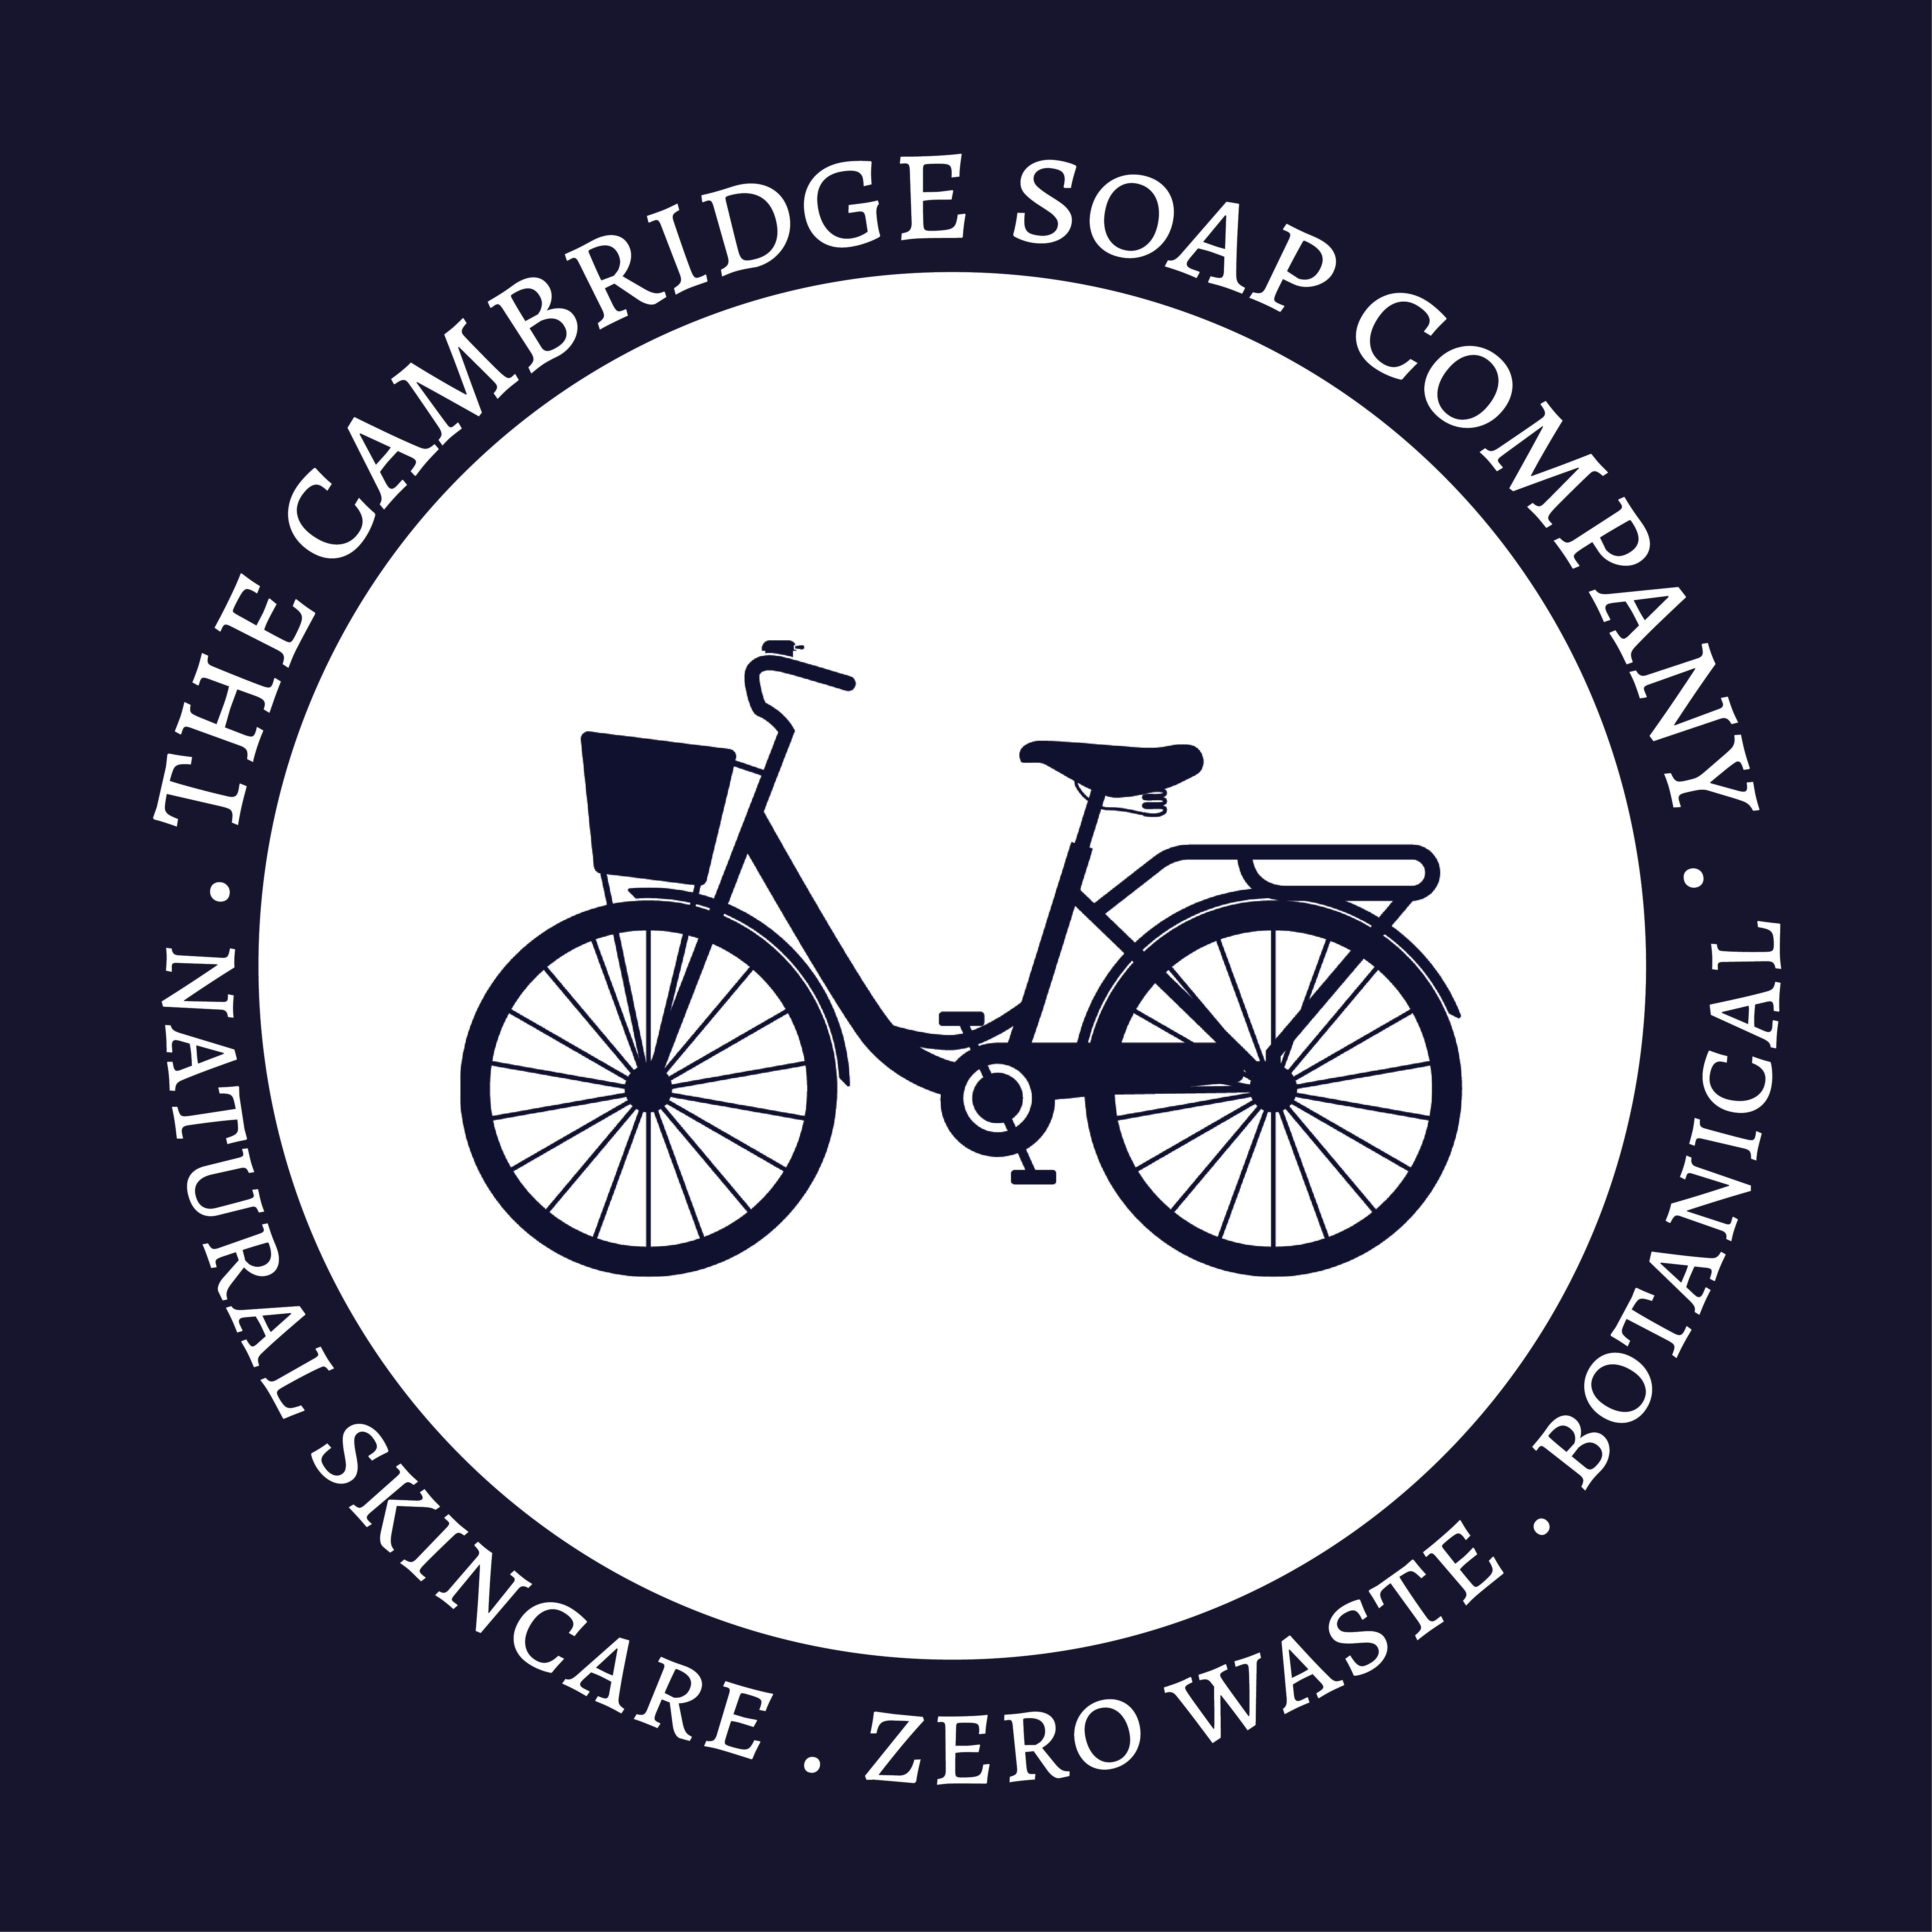 The Cambridge Soap Company